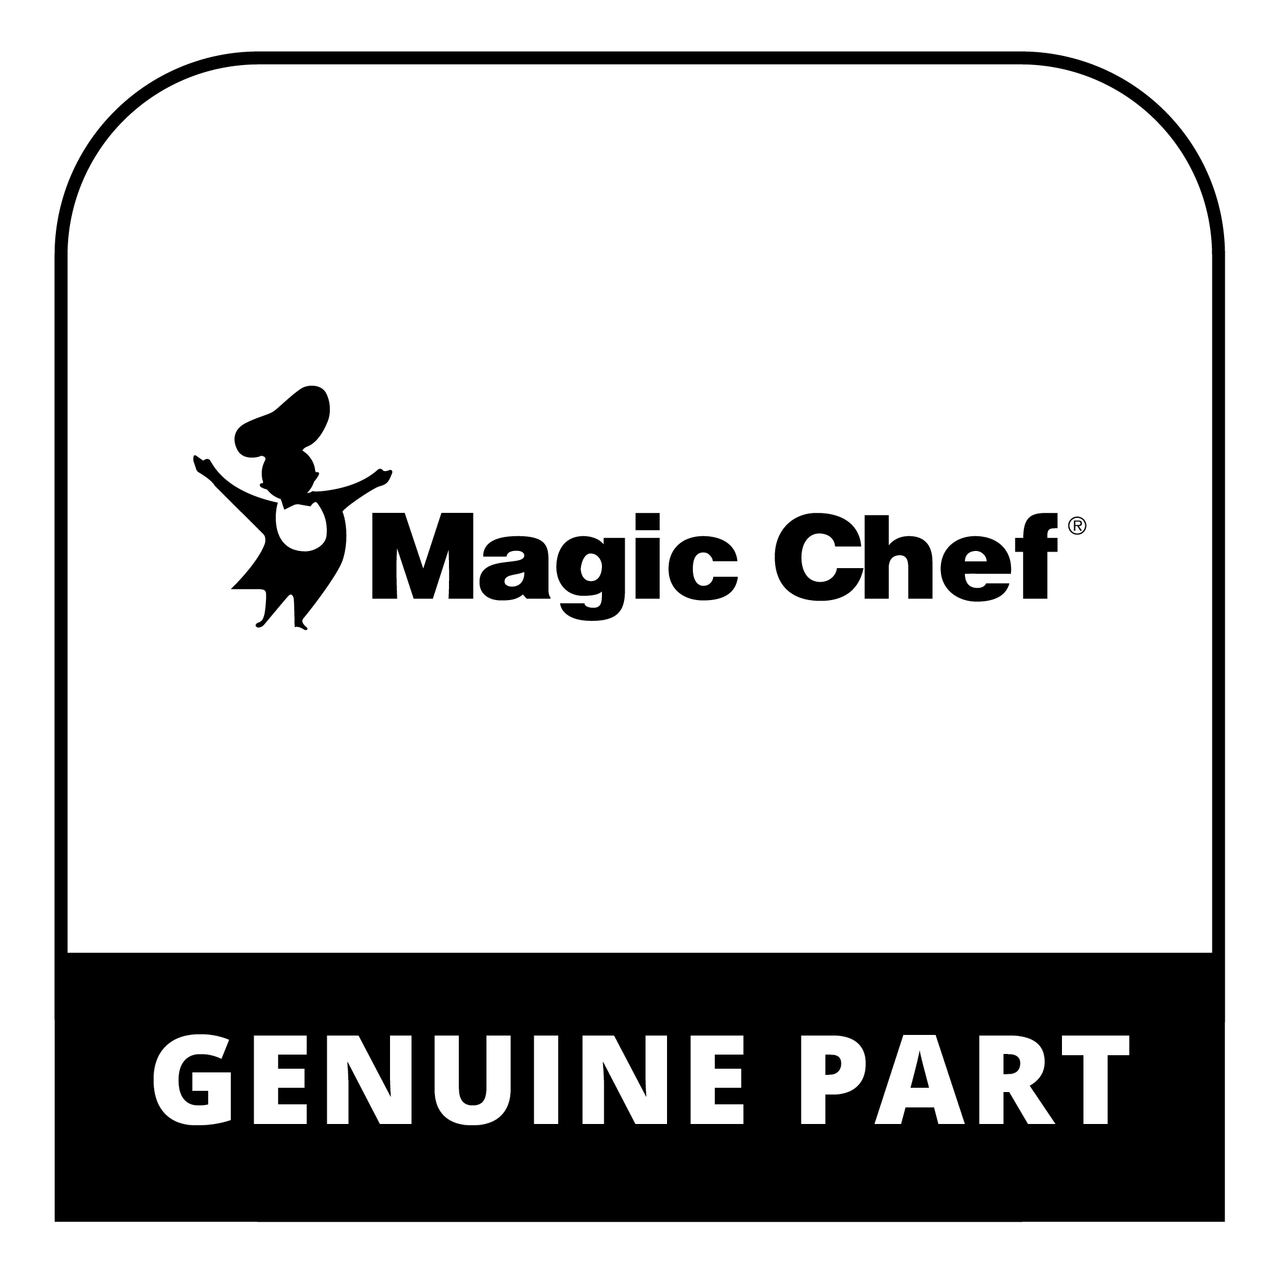 Magic Chef C0507.5-14 - CAN RACK (2) MCBR1010W/S/MCR10 - Genuine Magic Chef Part